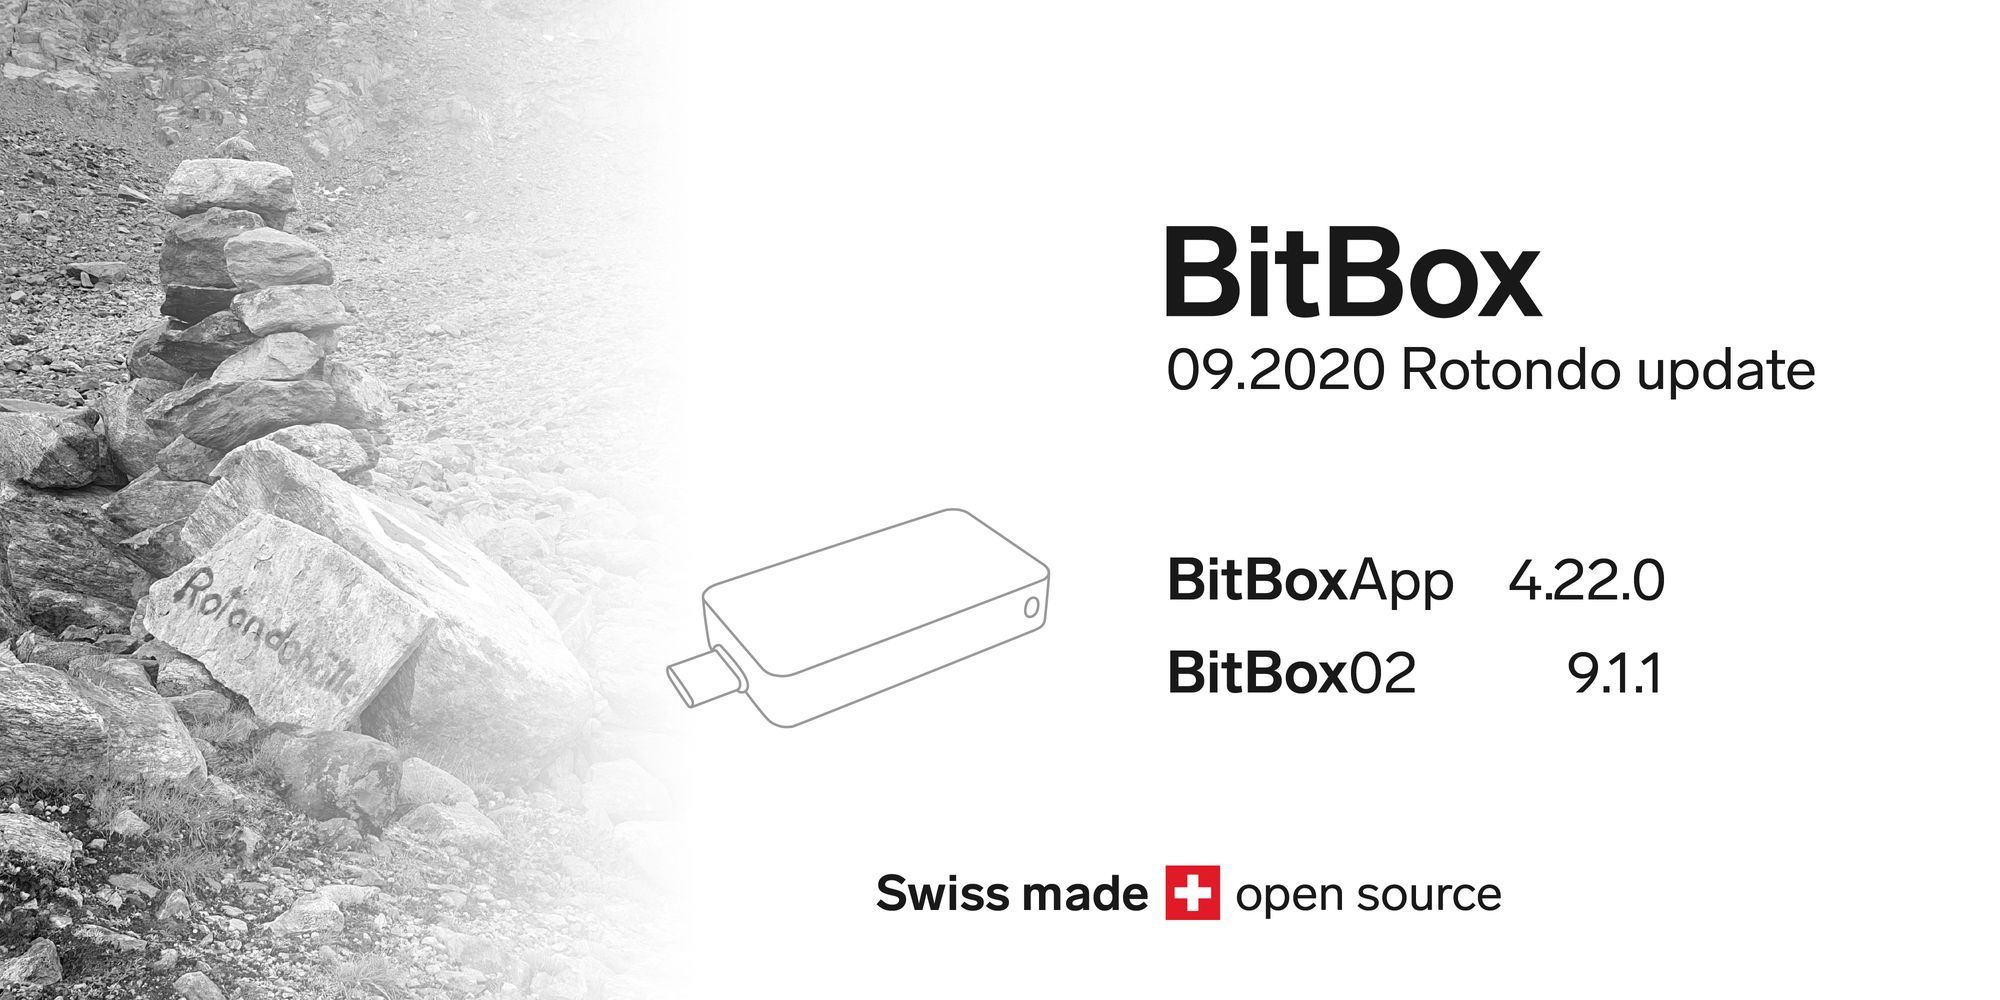 BitBox 9.2020 Rotondo update